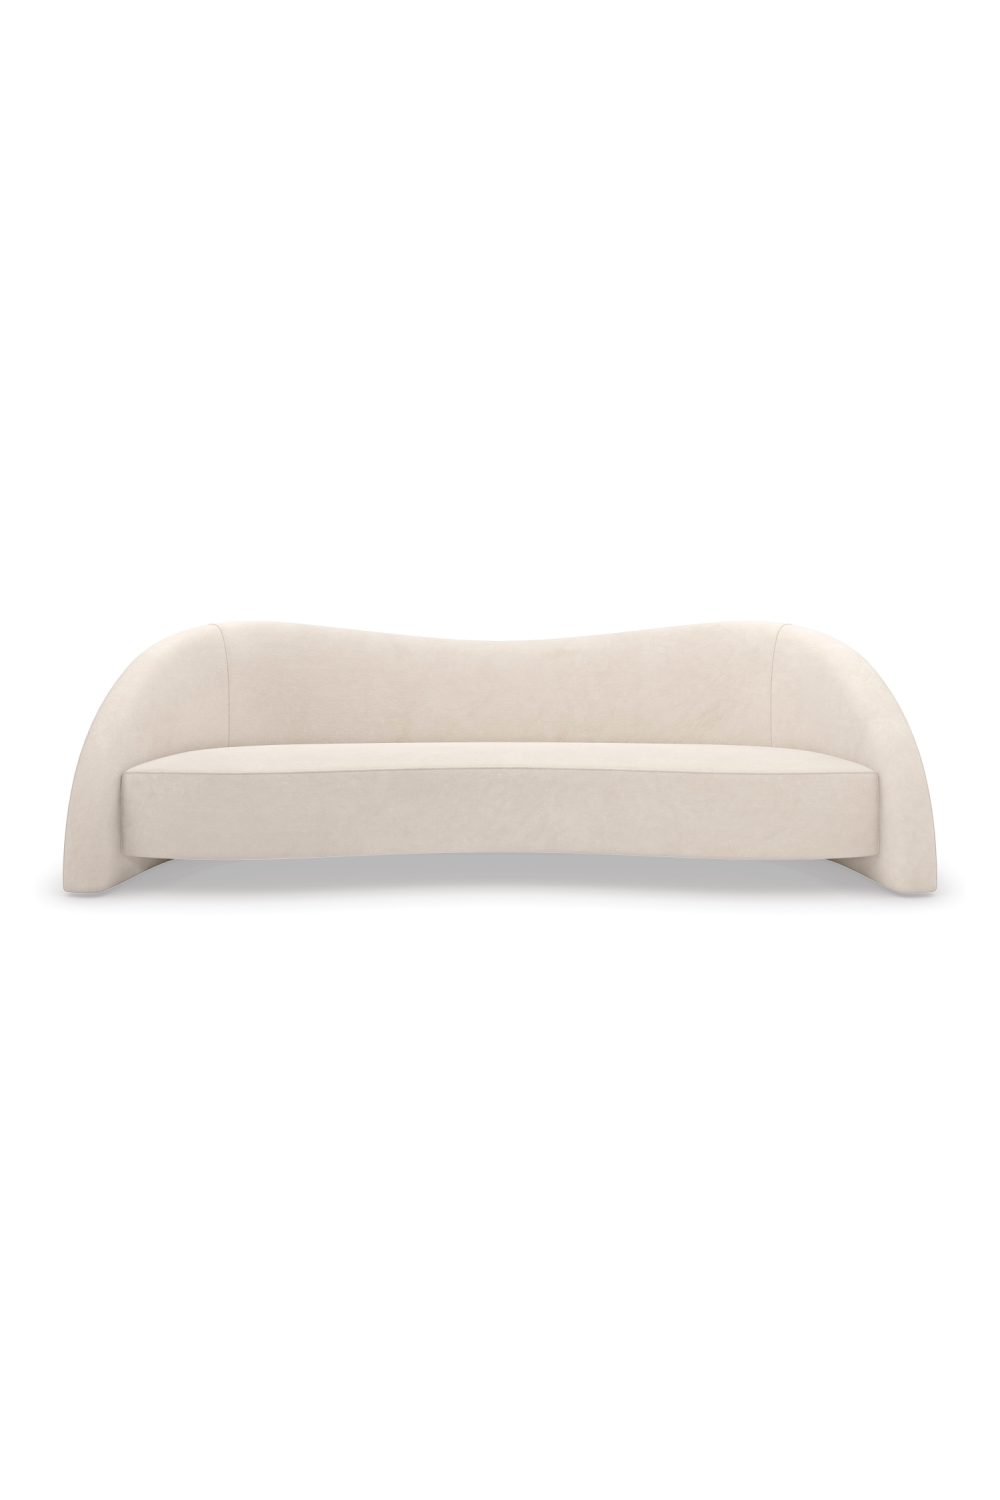 White Free-Form Sofa | Caracole Movement | Oroa.com